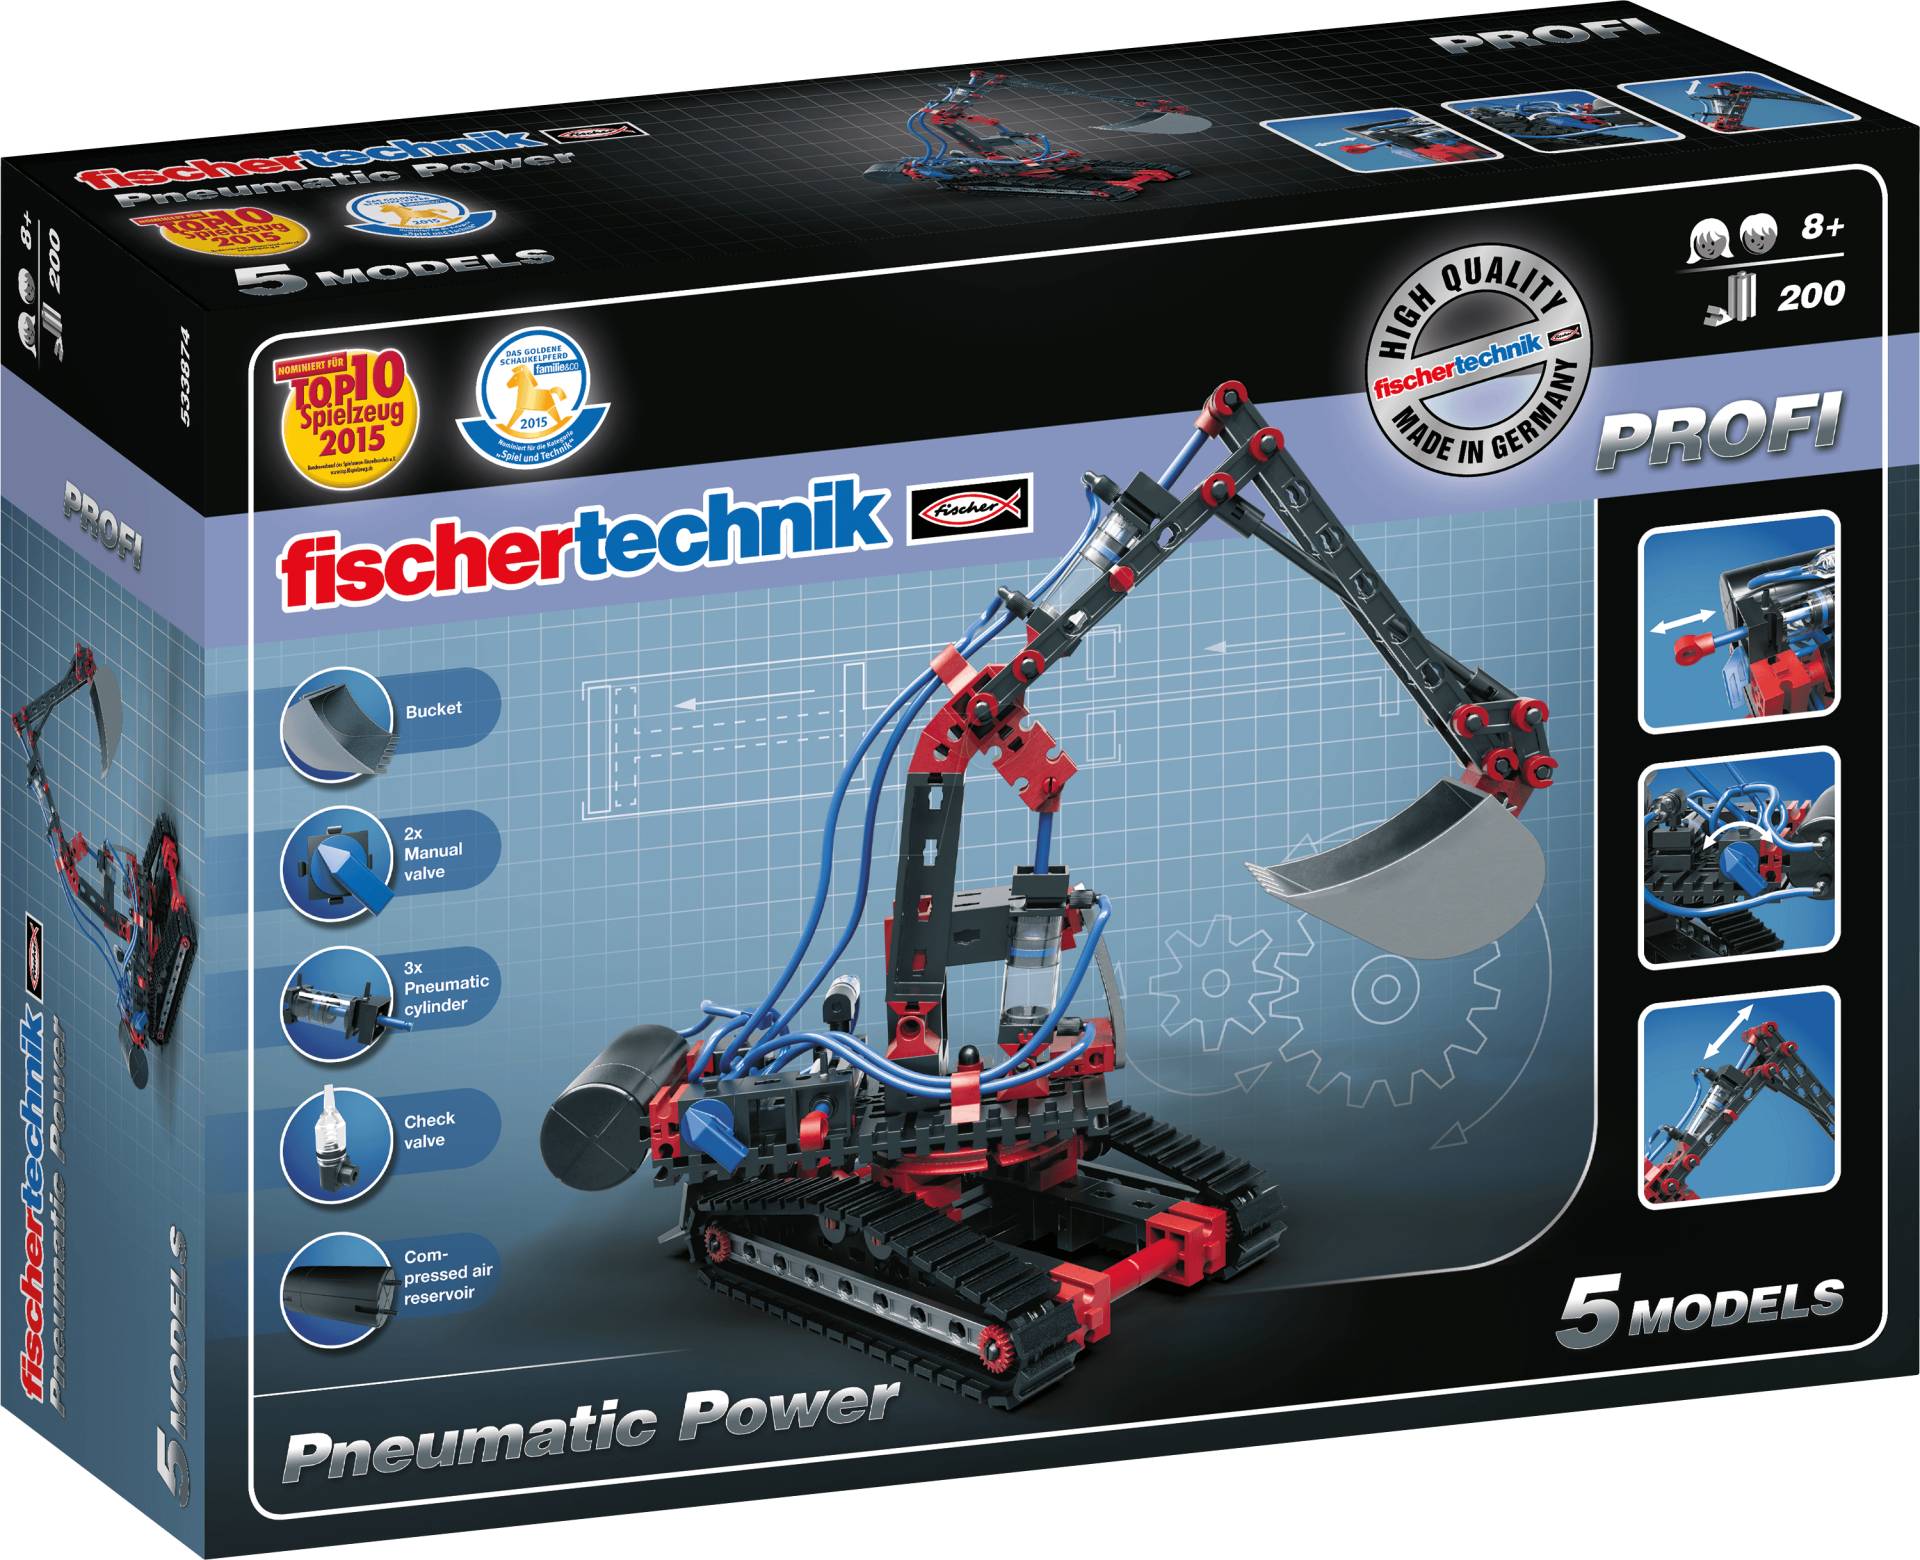 FISCHER 533874 - PROFI Pneumatic Power von Fischertechnik